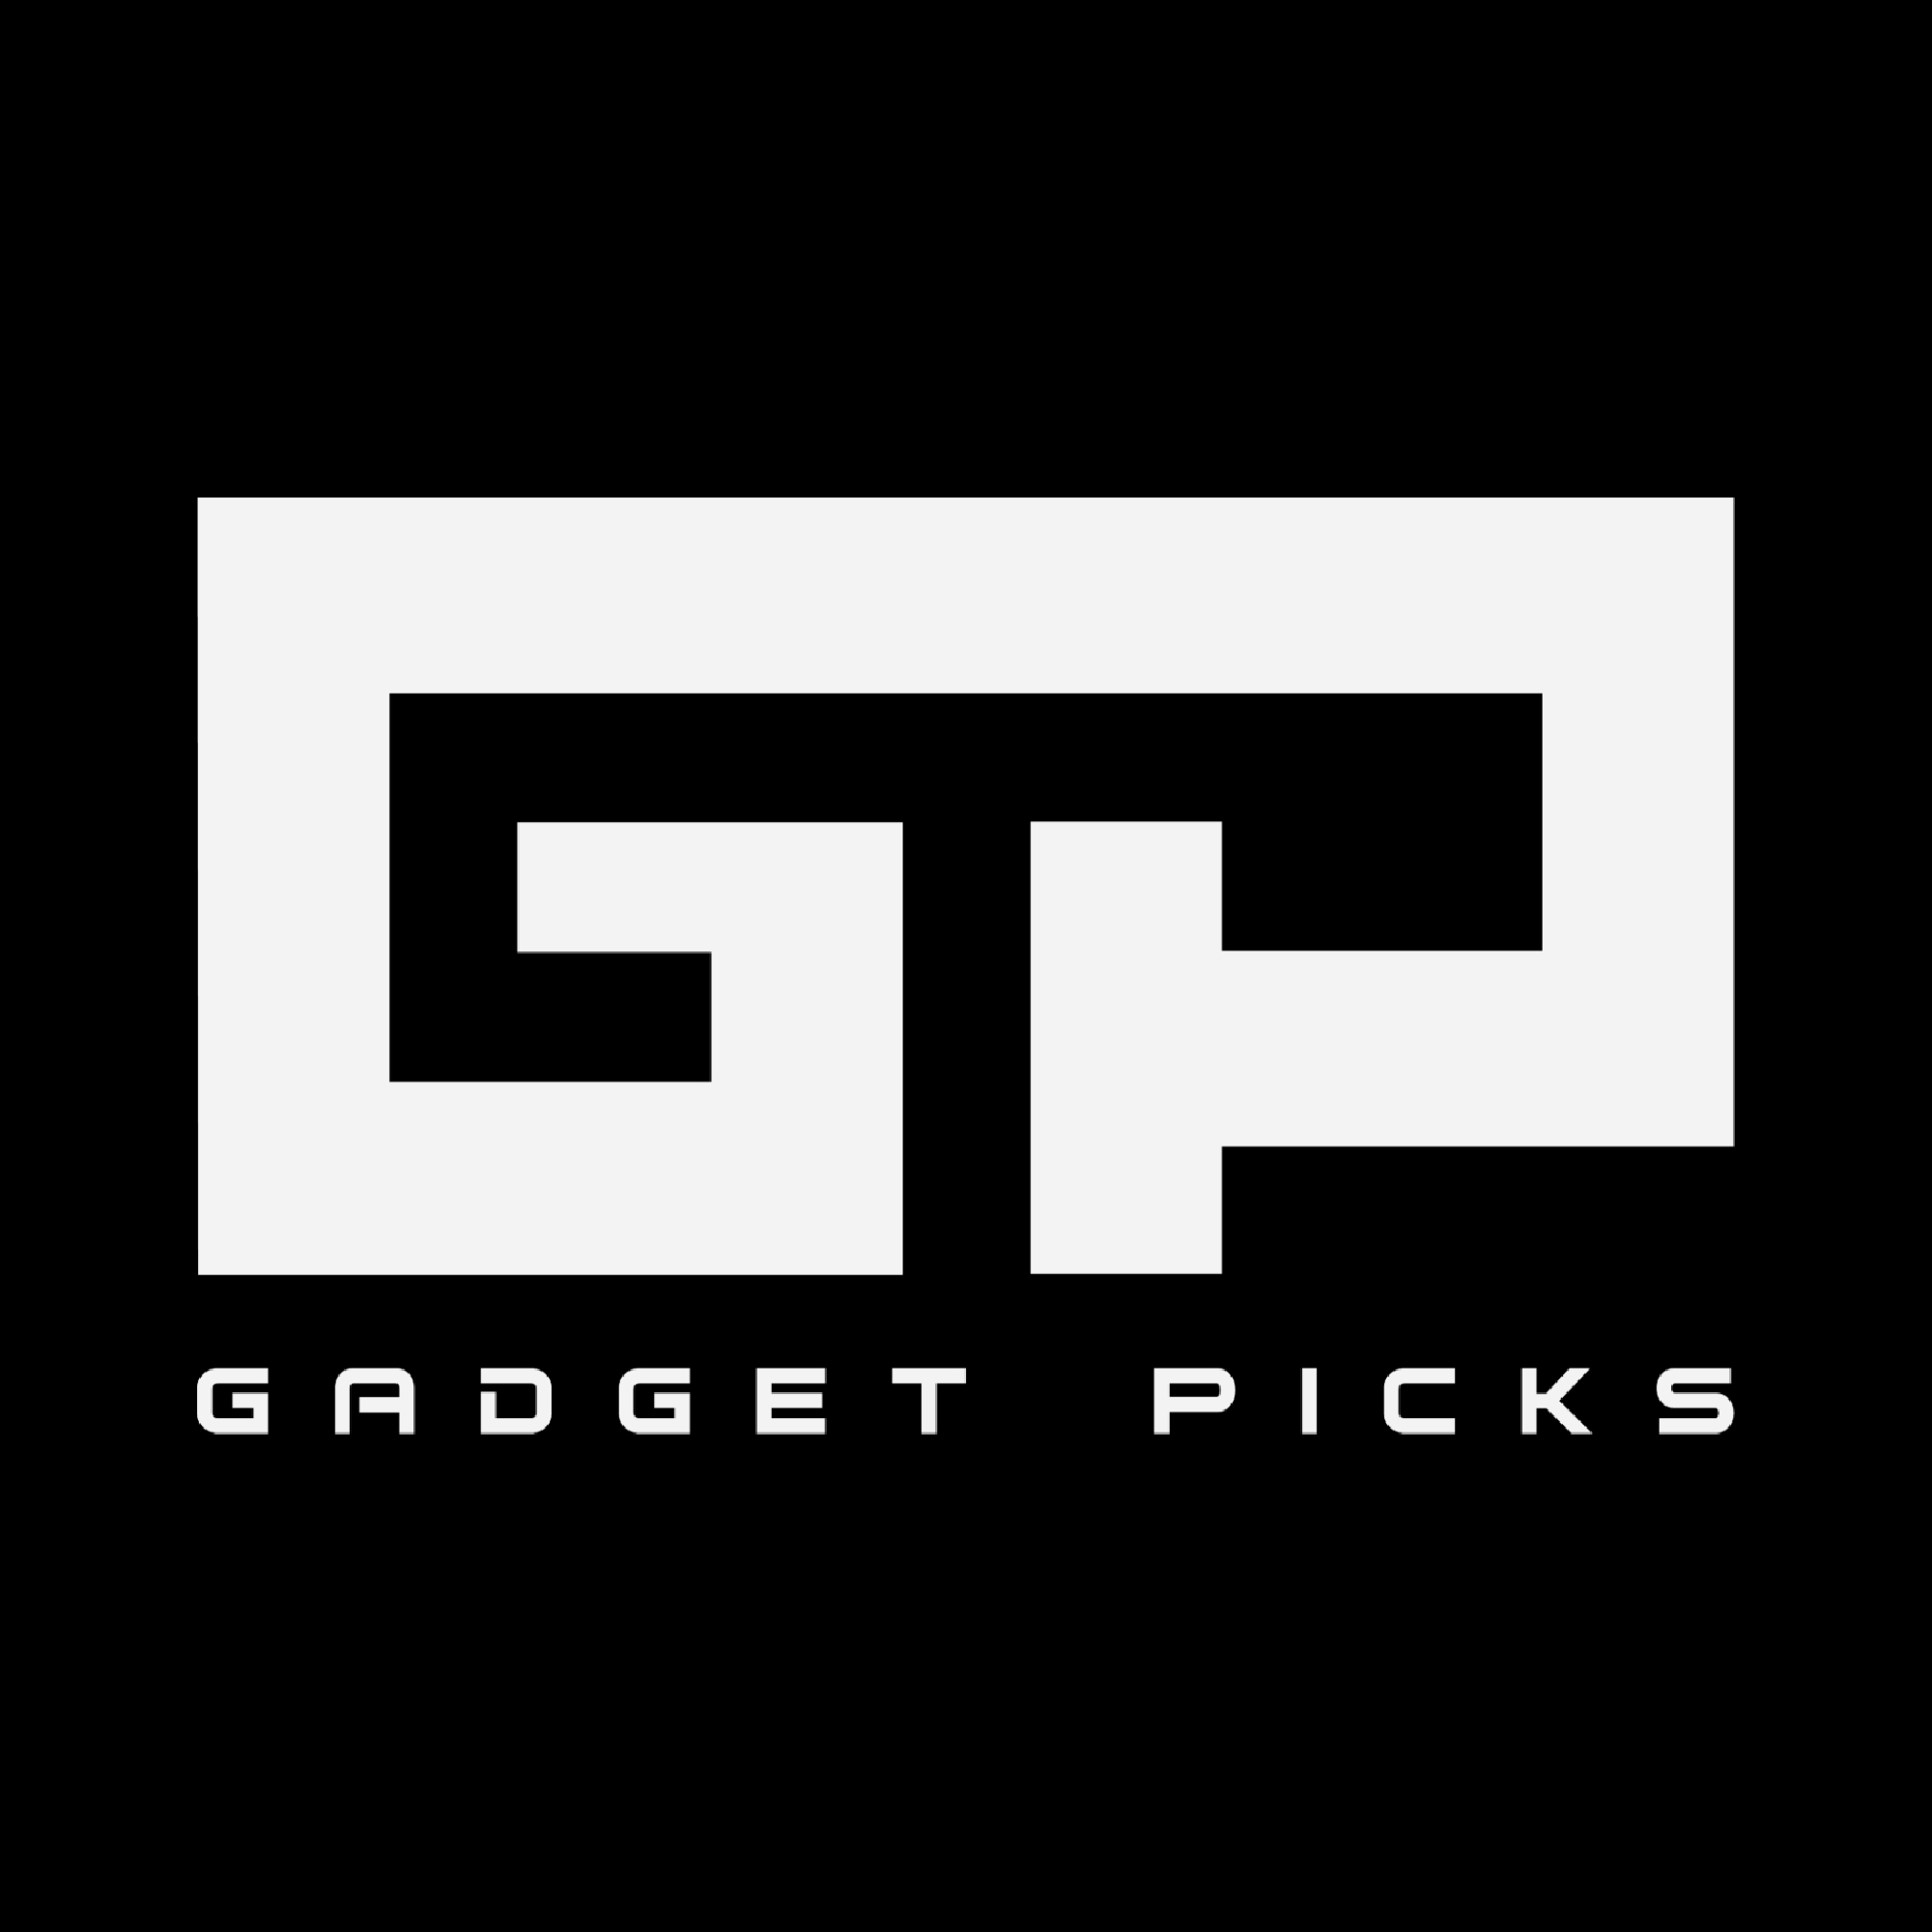 Gadget Picks